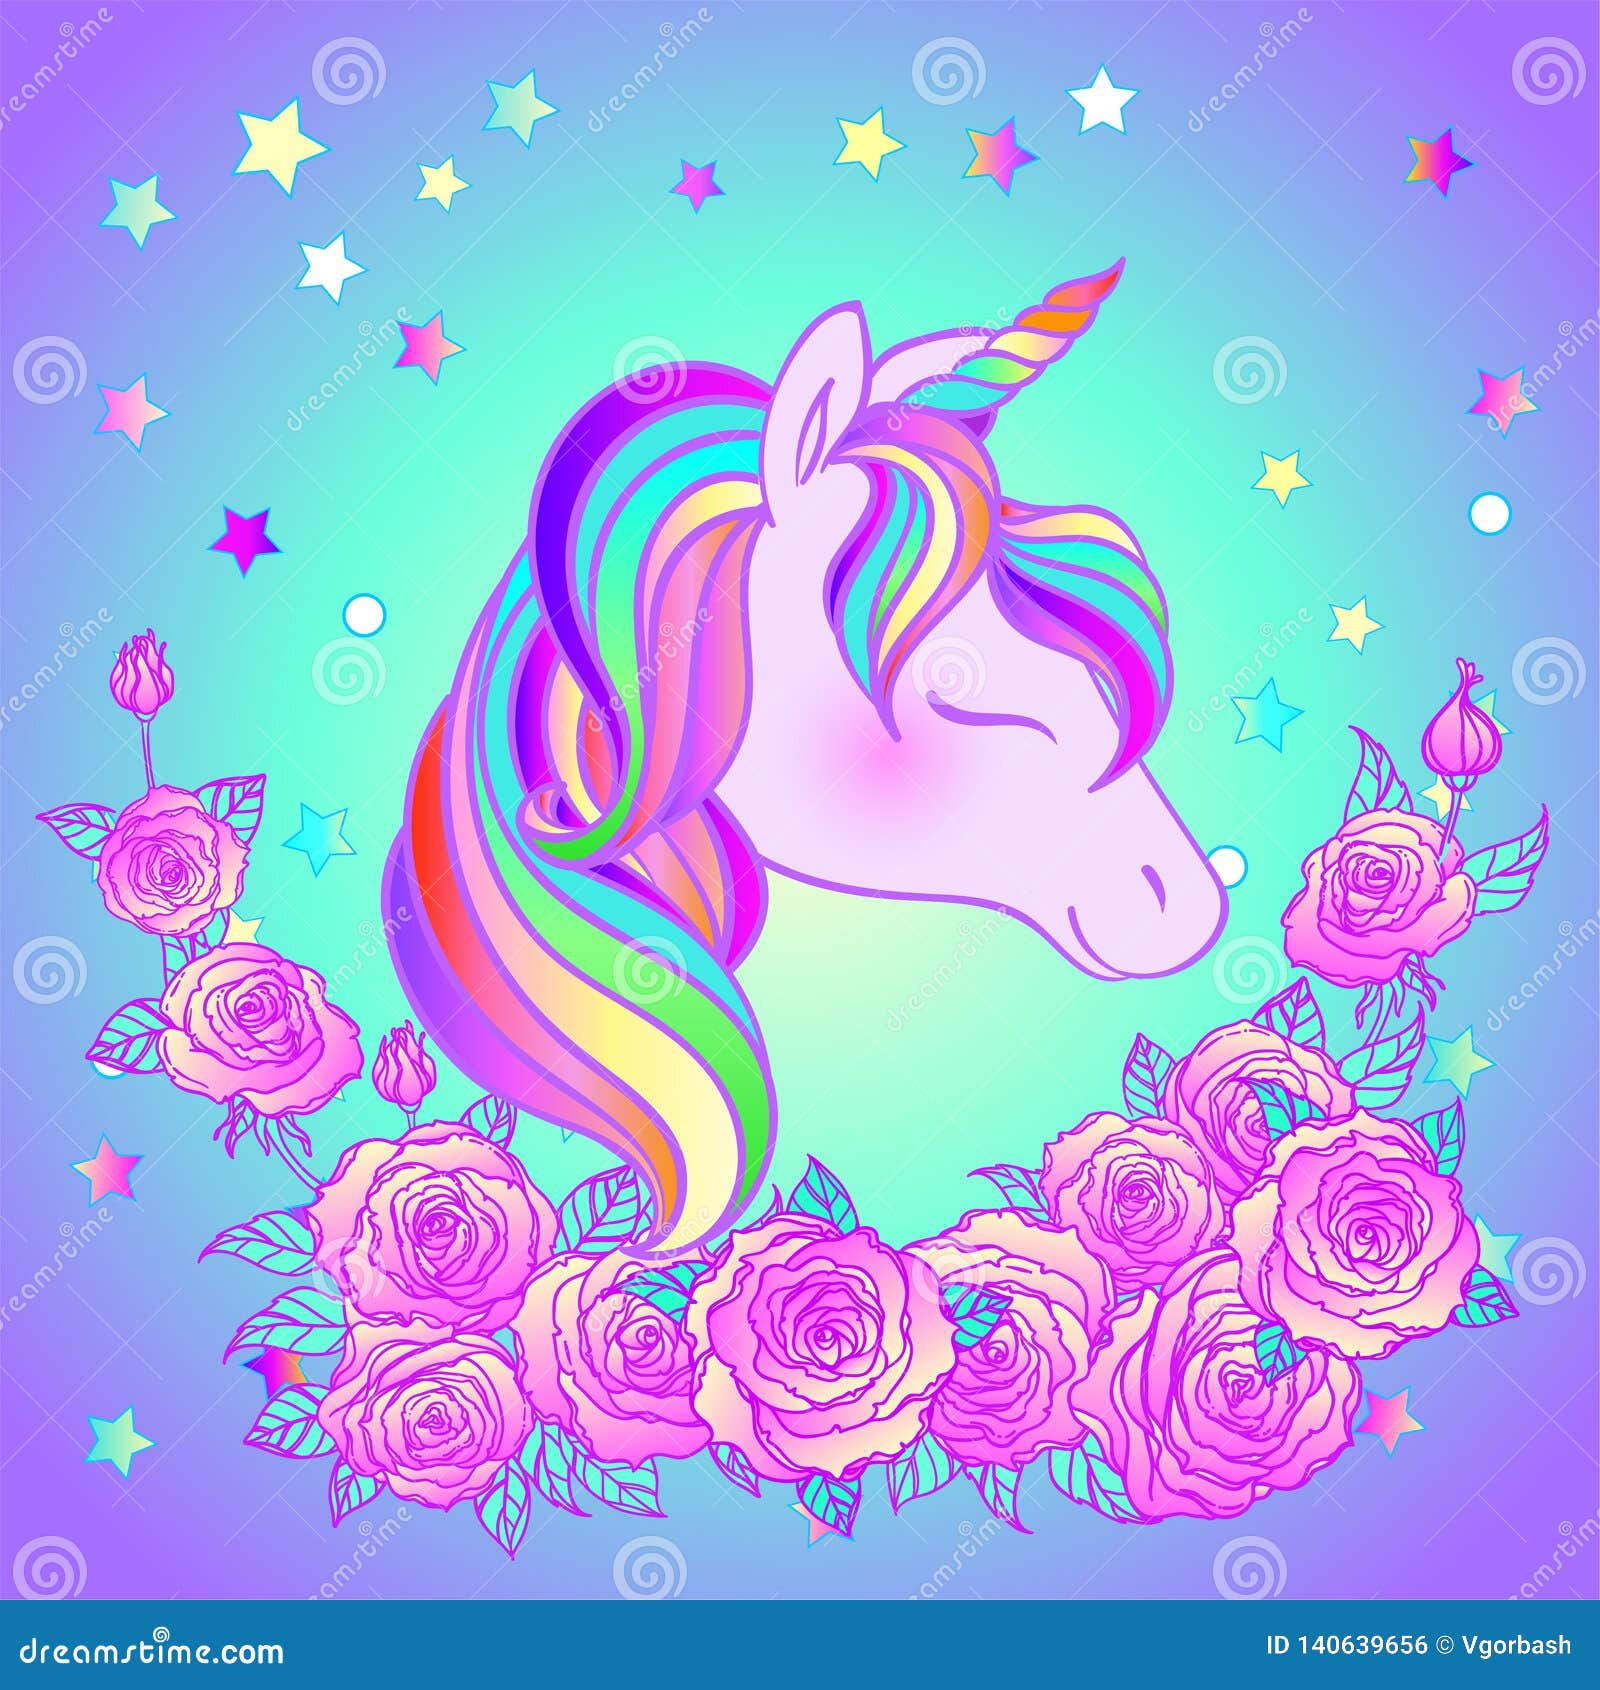 colorful unicorn design vector illustration stickers